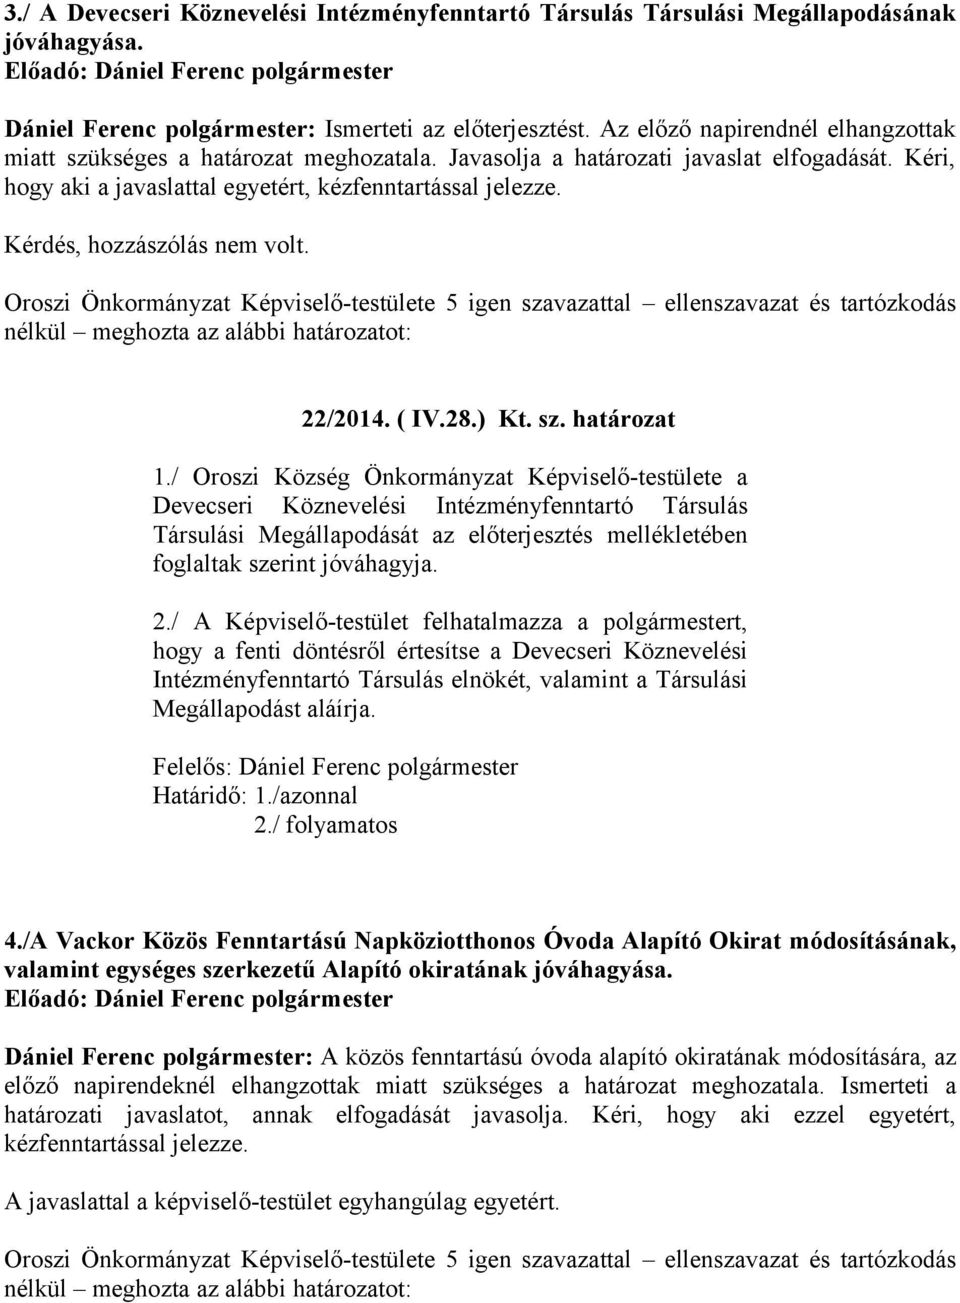 Kérdés, hozzászólás nem volt. Oroszi Önkormányzat Képviselő-testülete 5 igen szavazattal ellenszavazat és tartózkodás 22/2014. ( IV.28.) Kt. sz. határozat 1.